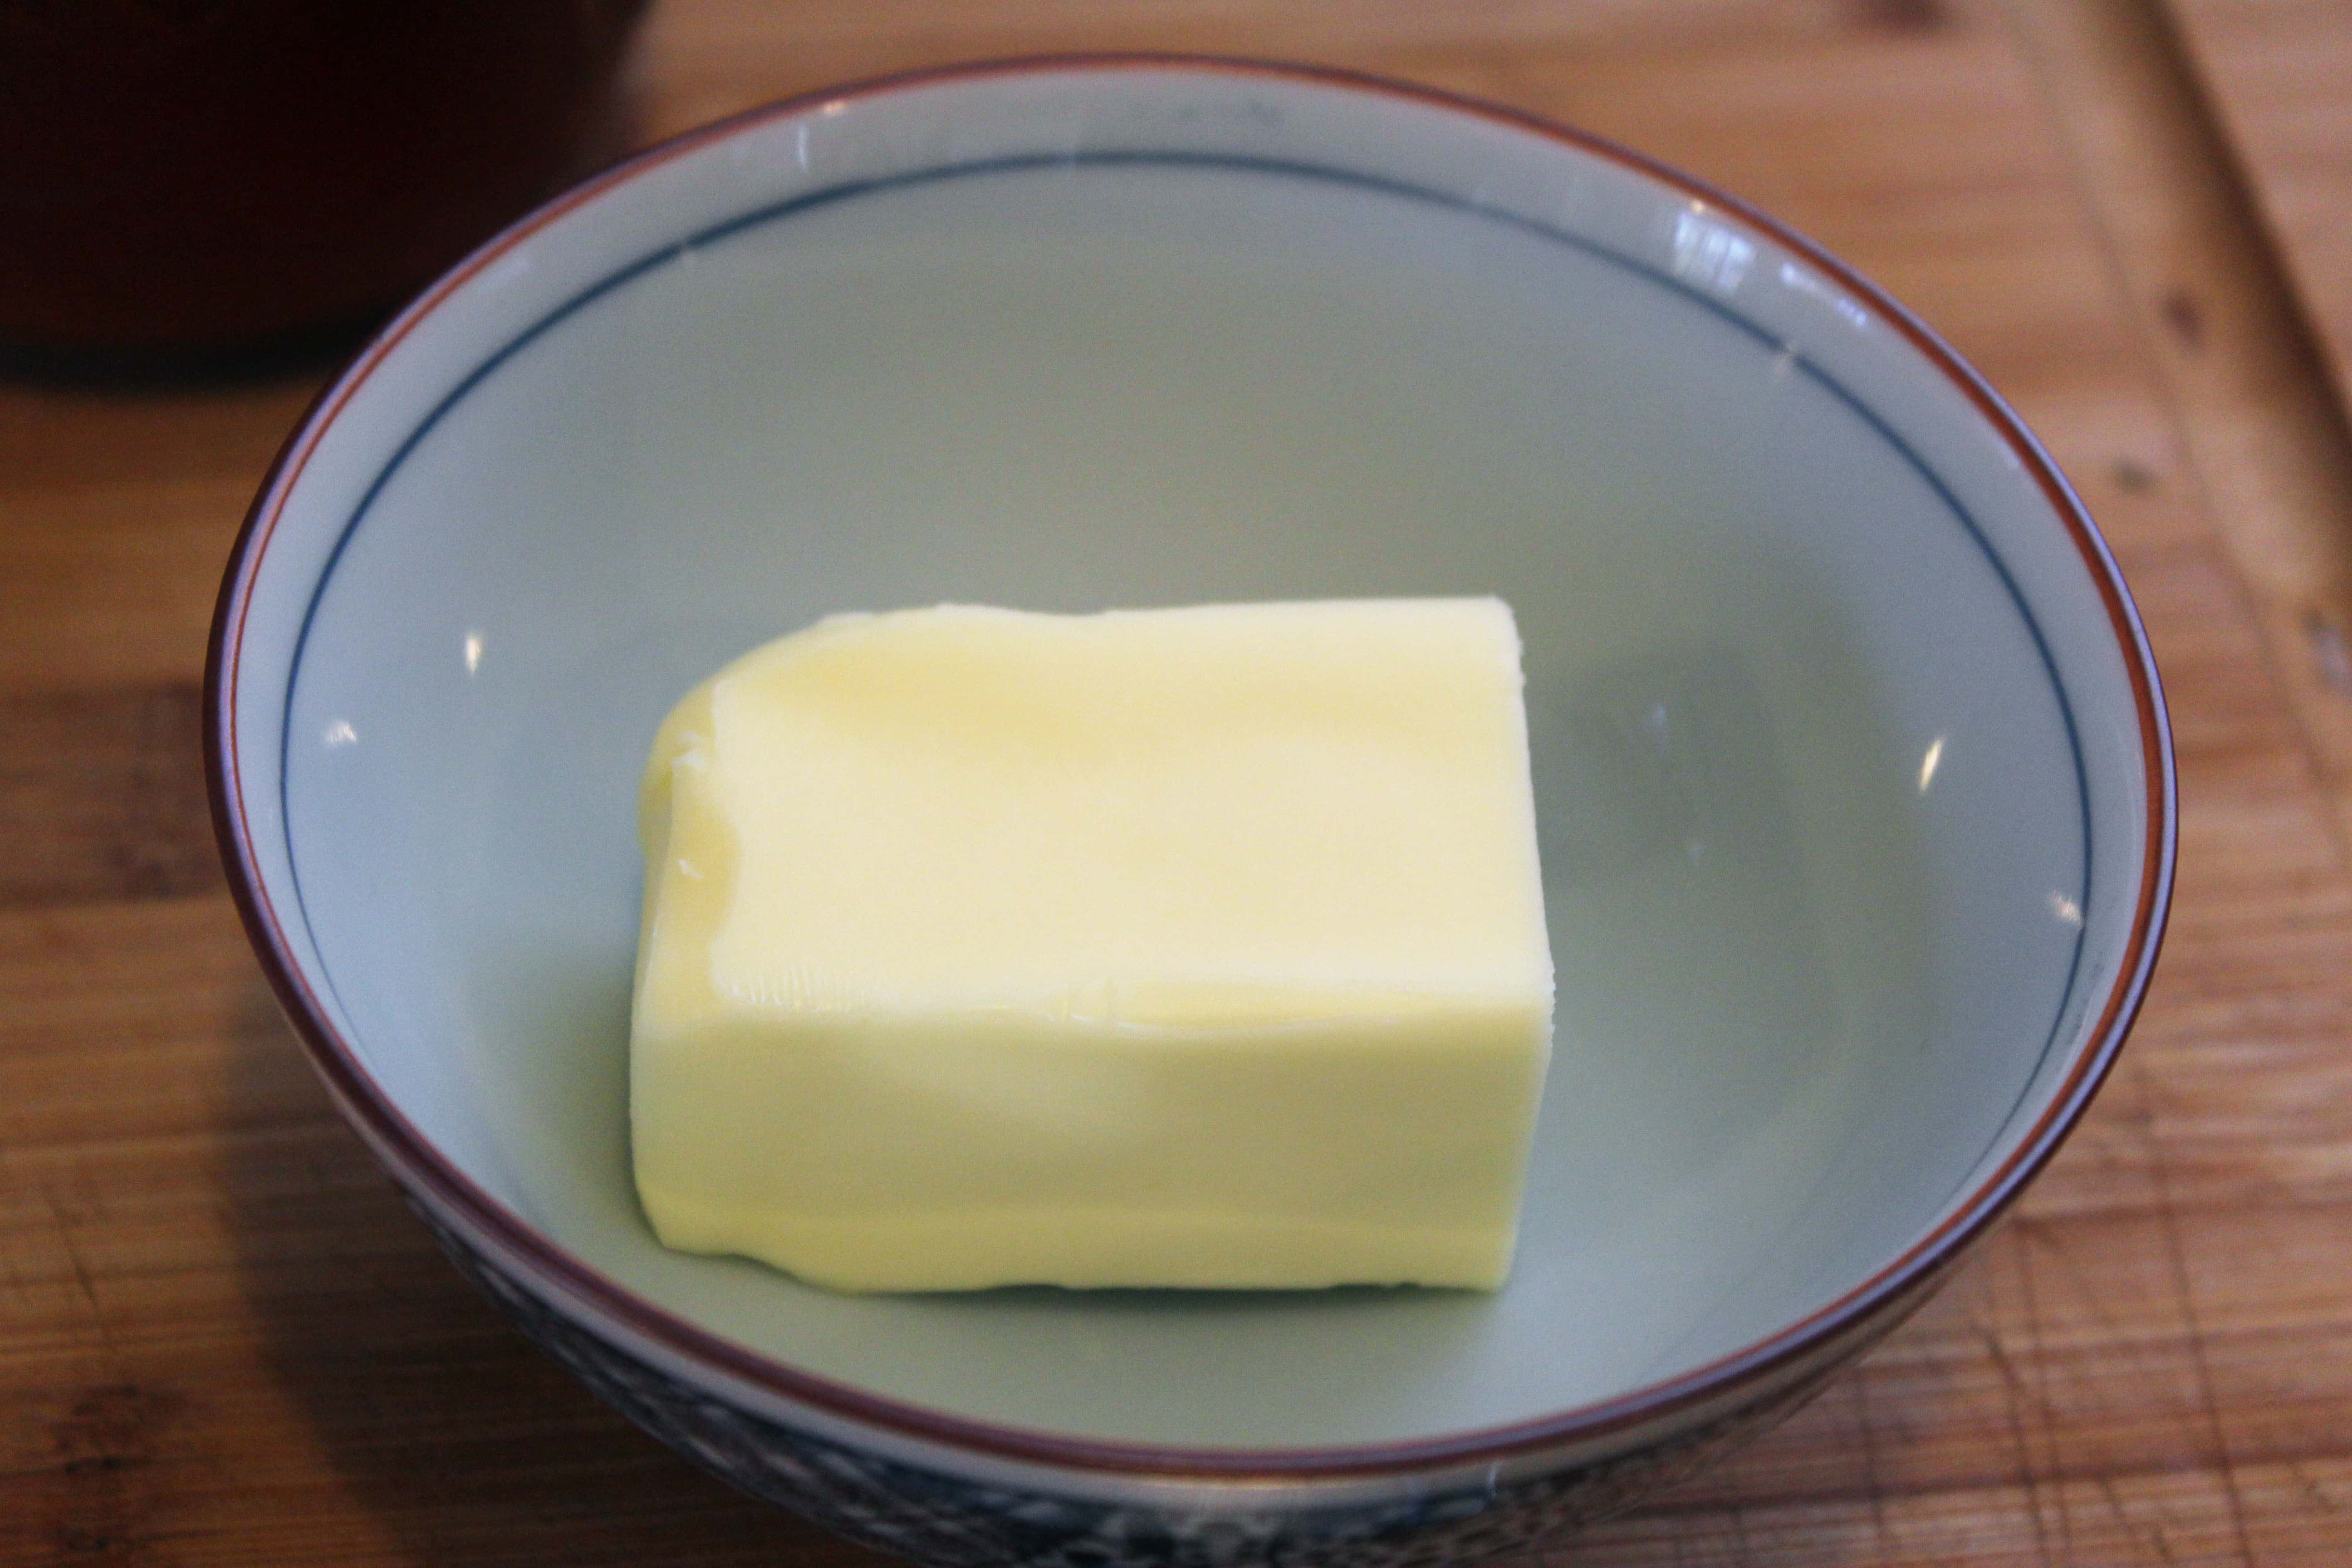 Soften butter